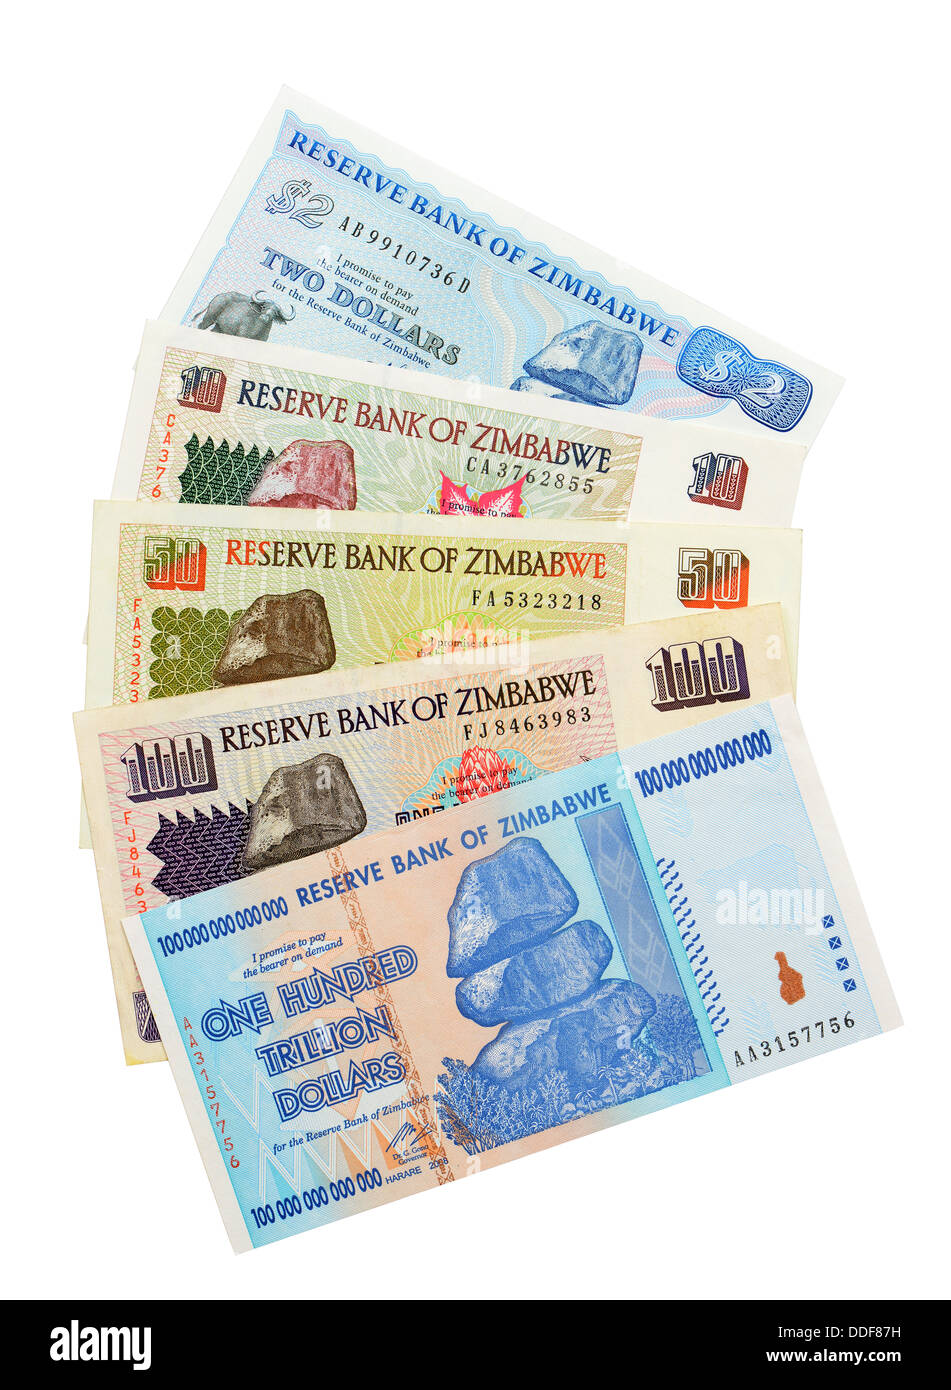 Zimbabwean Money, currency, inflation, Zimbabwe Stock Photo